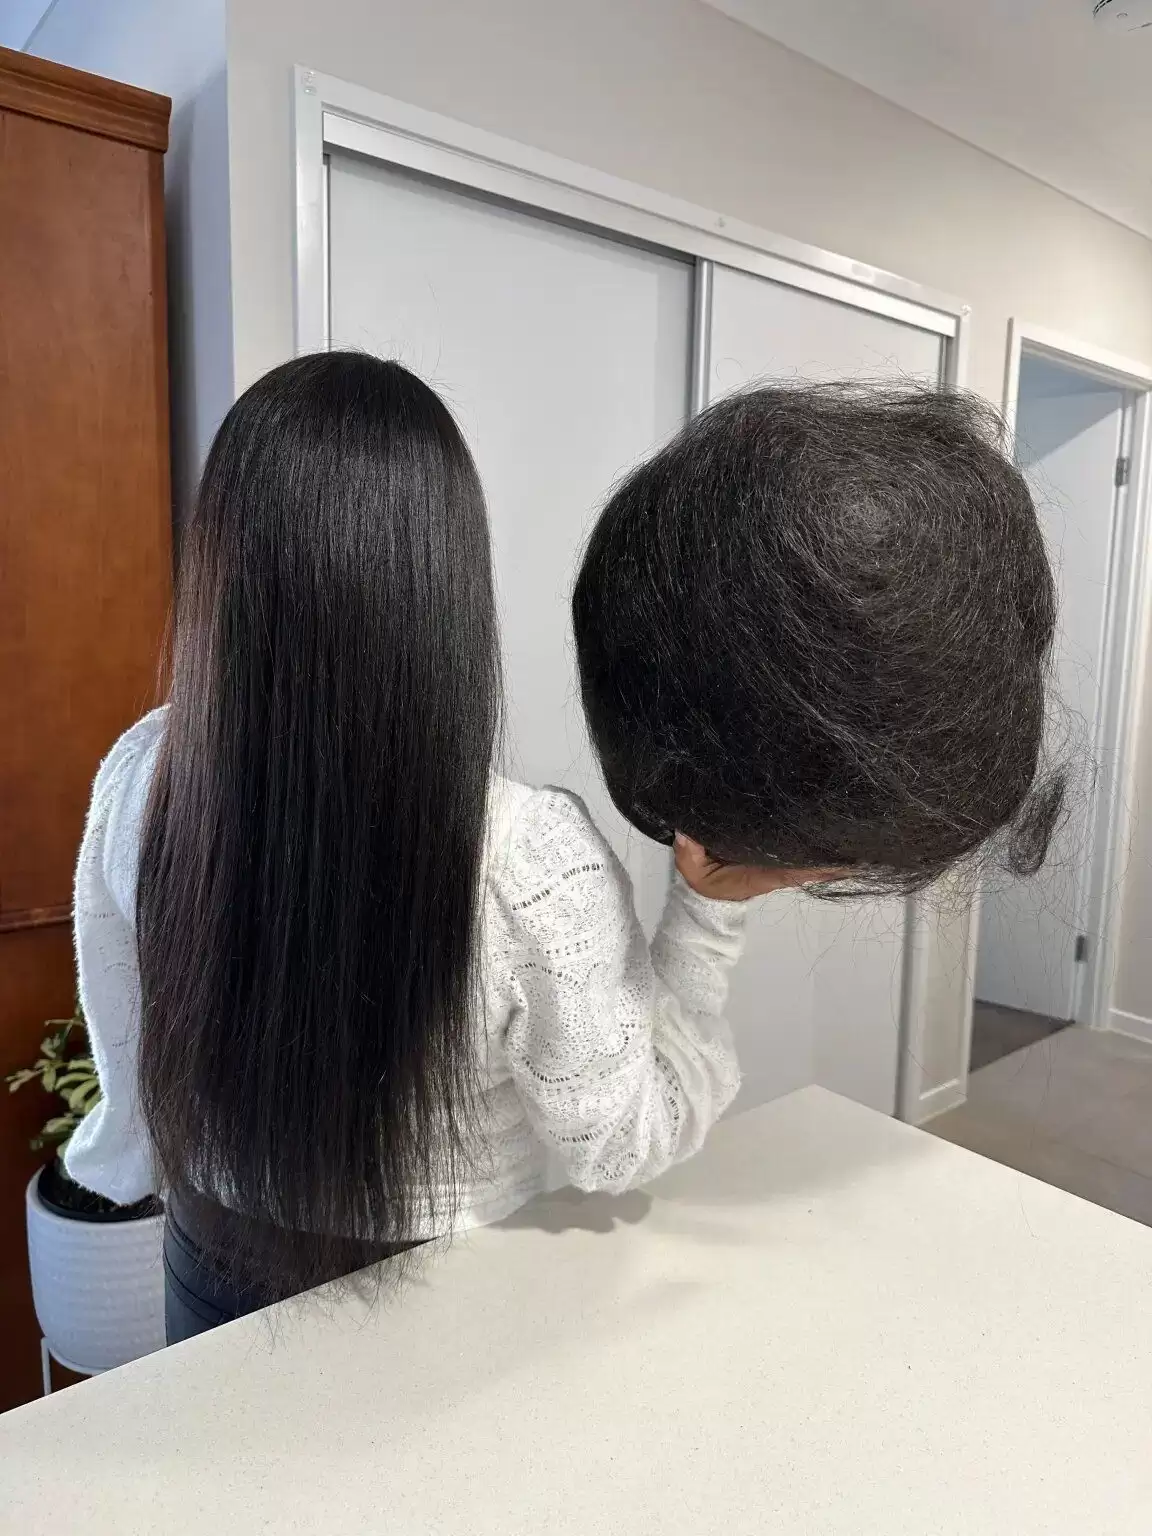 Жінка 23 роки збирала своє волосся зі зливу у ванній: вона показала гігантську грудку (ФОТО)